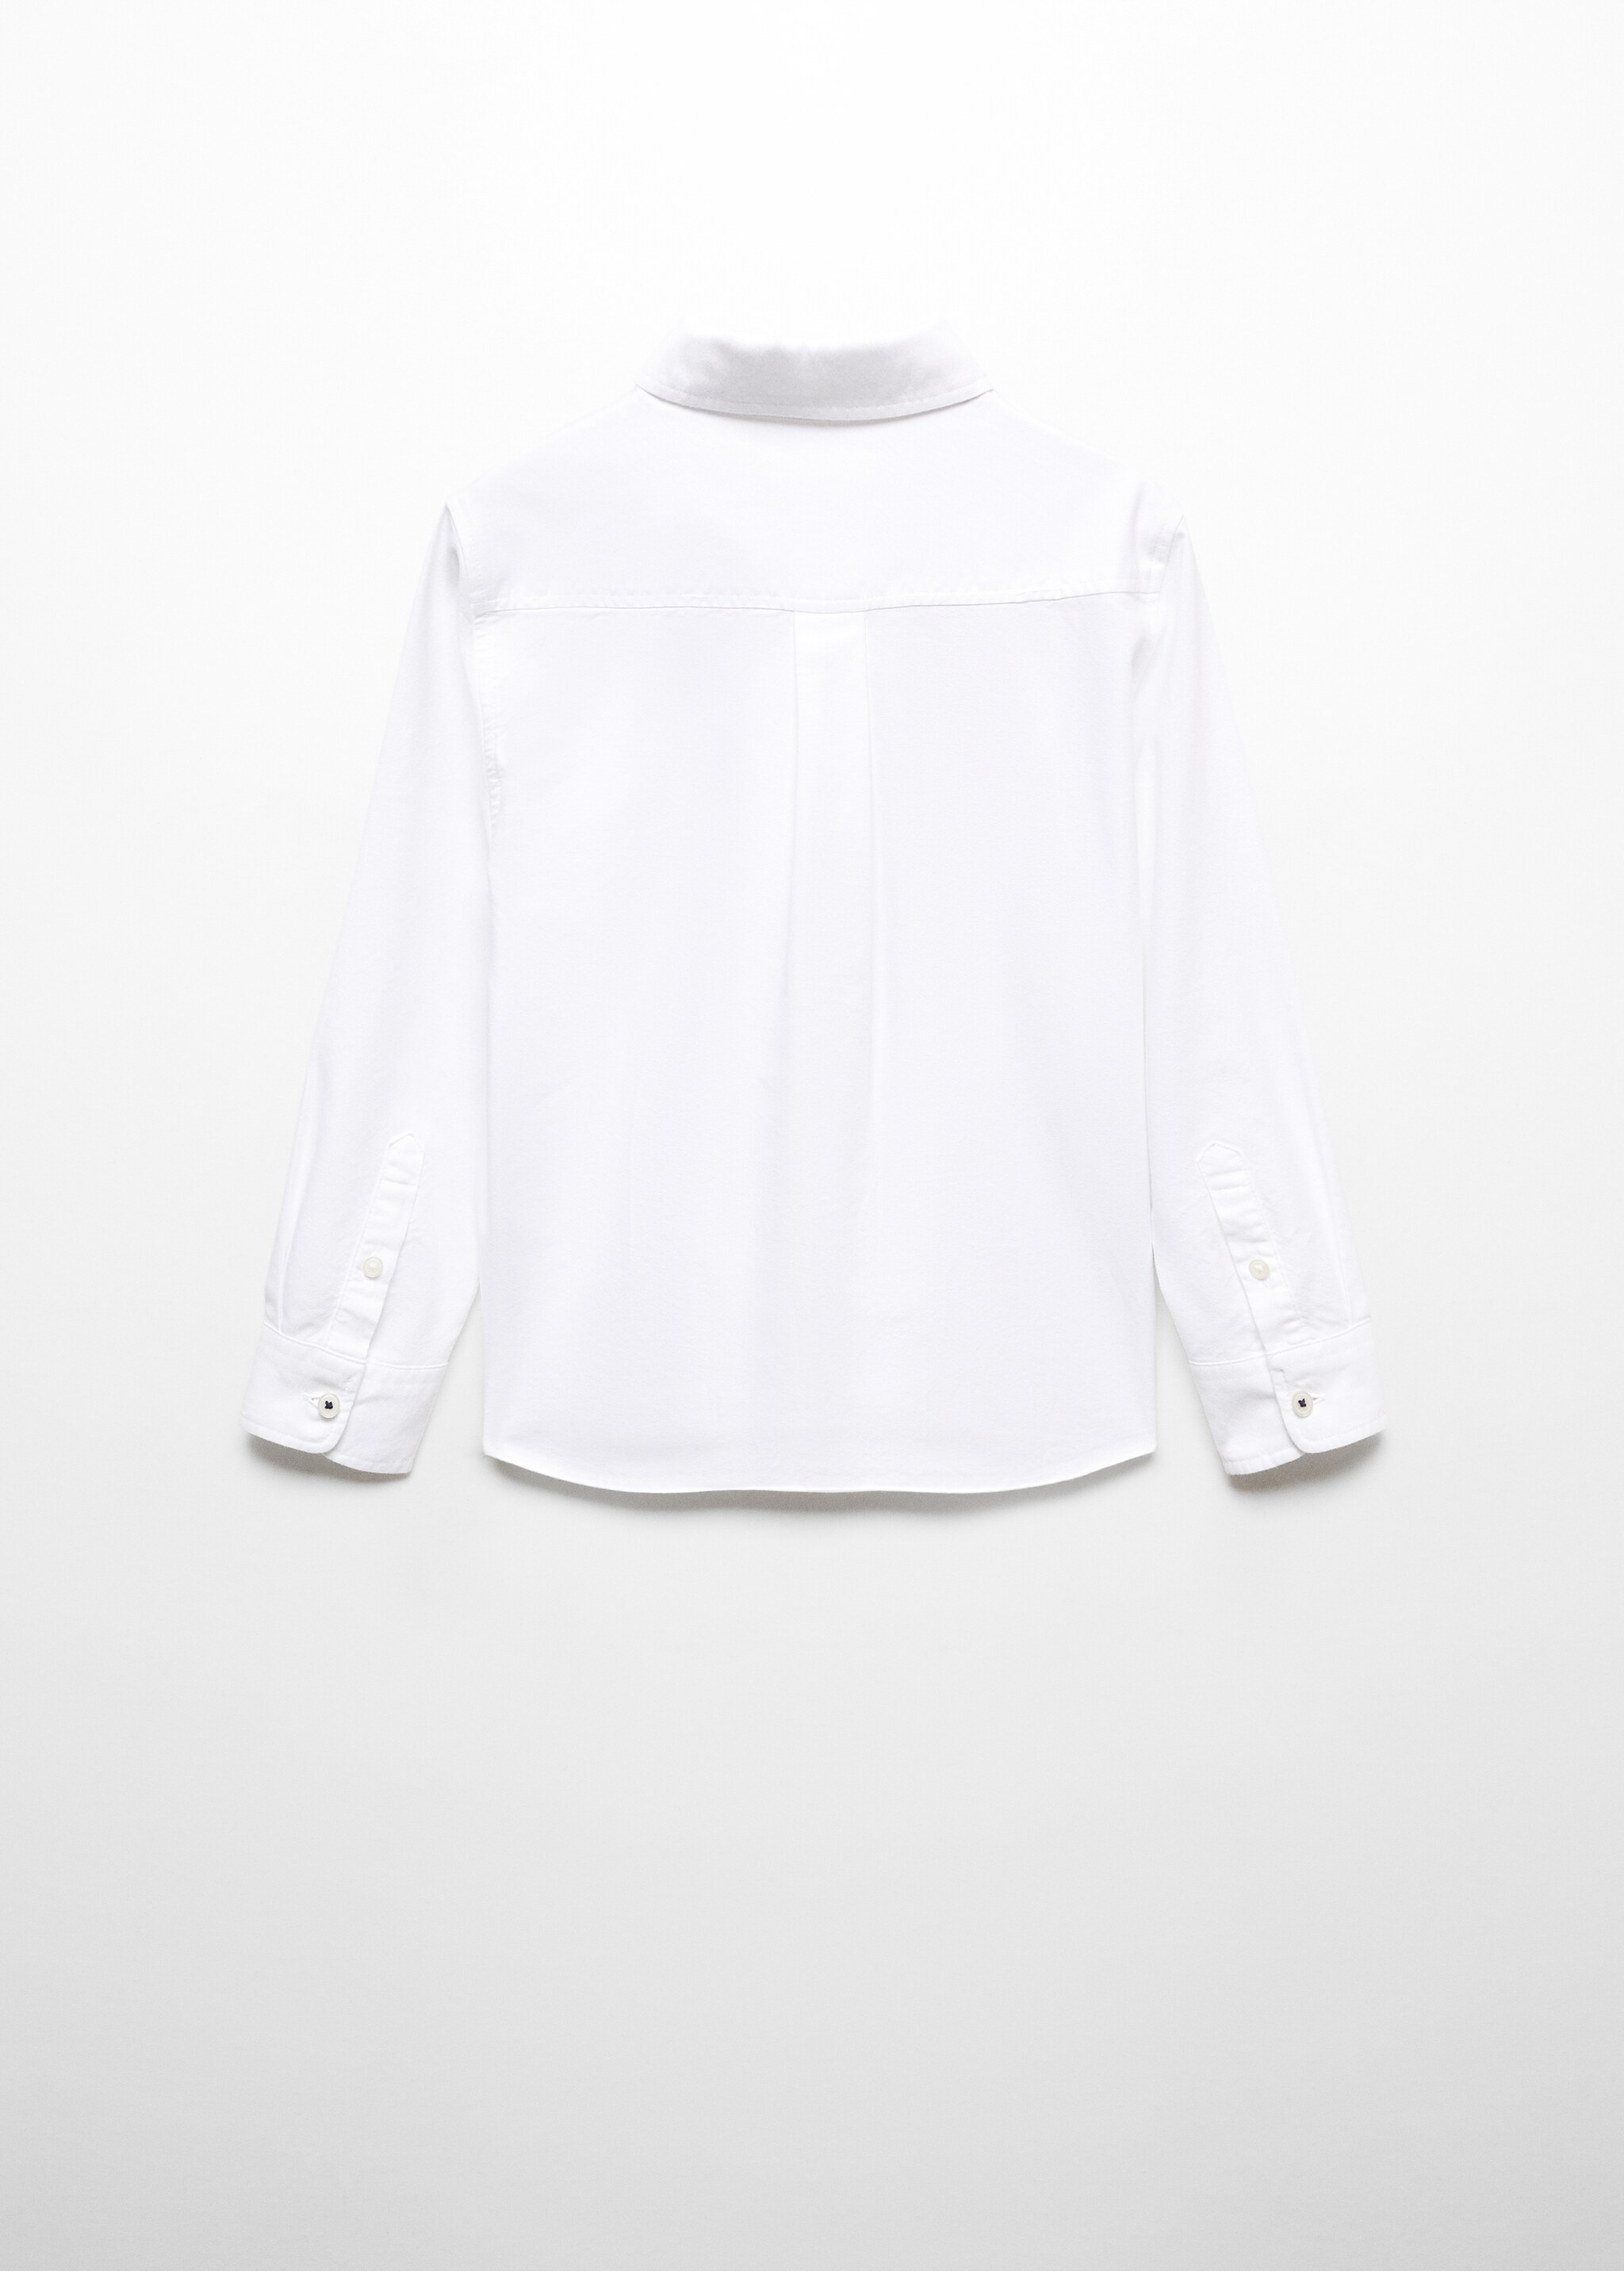 Camisa Oxford algodón - Reverso del artículo